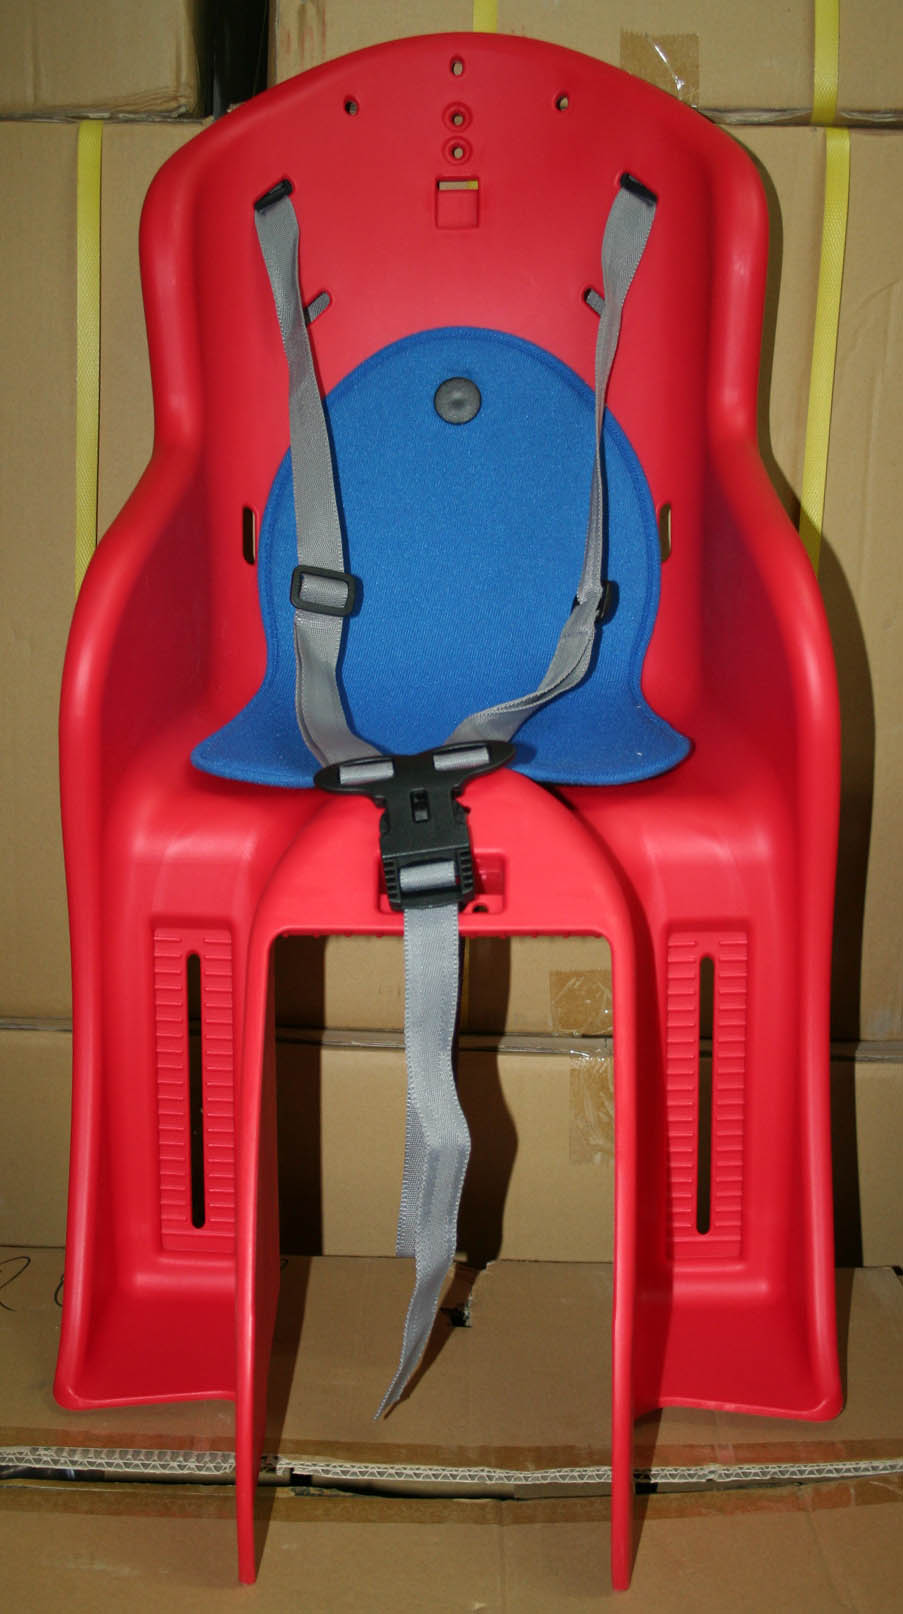 Кресло детское заднее, на багажник, красное, 25кг макс вес.